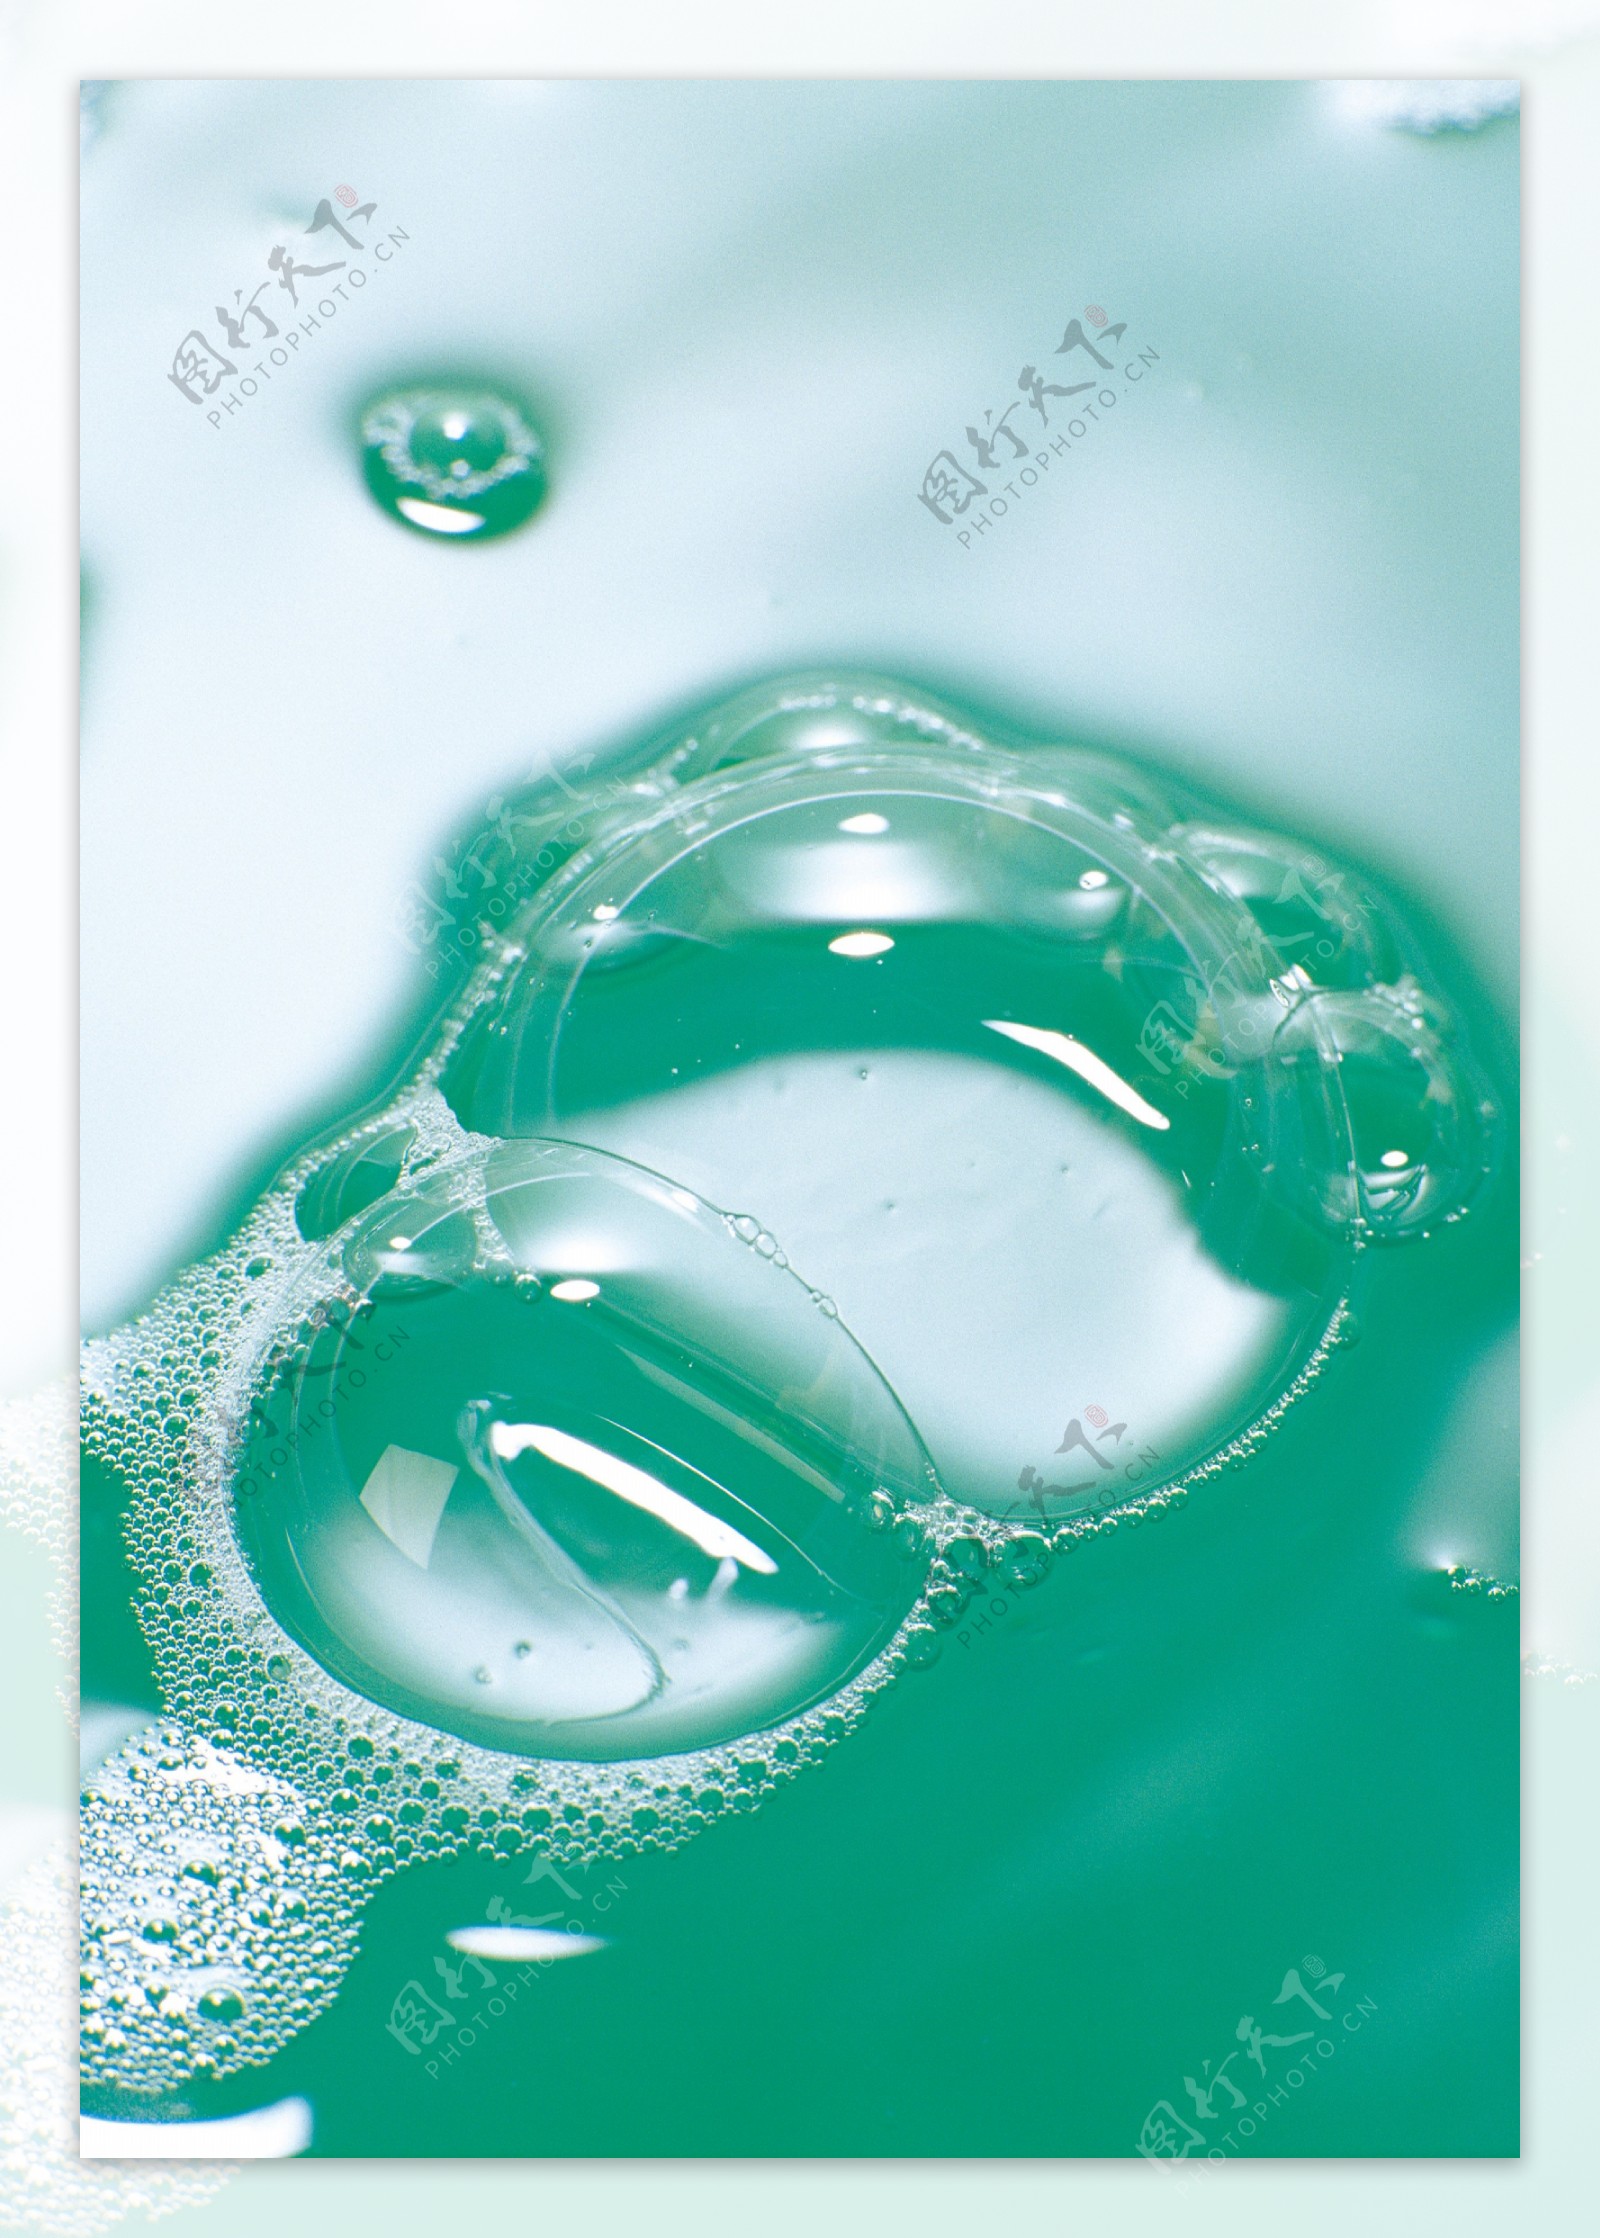 蓝色水滴背景图片